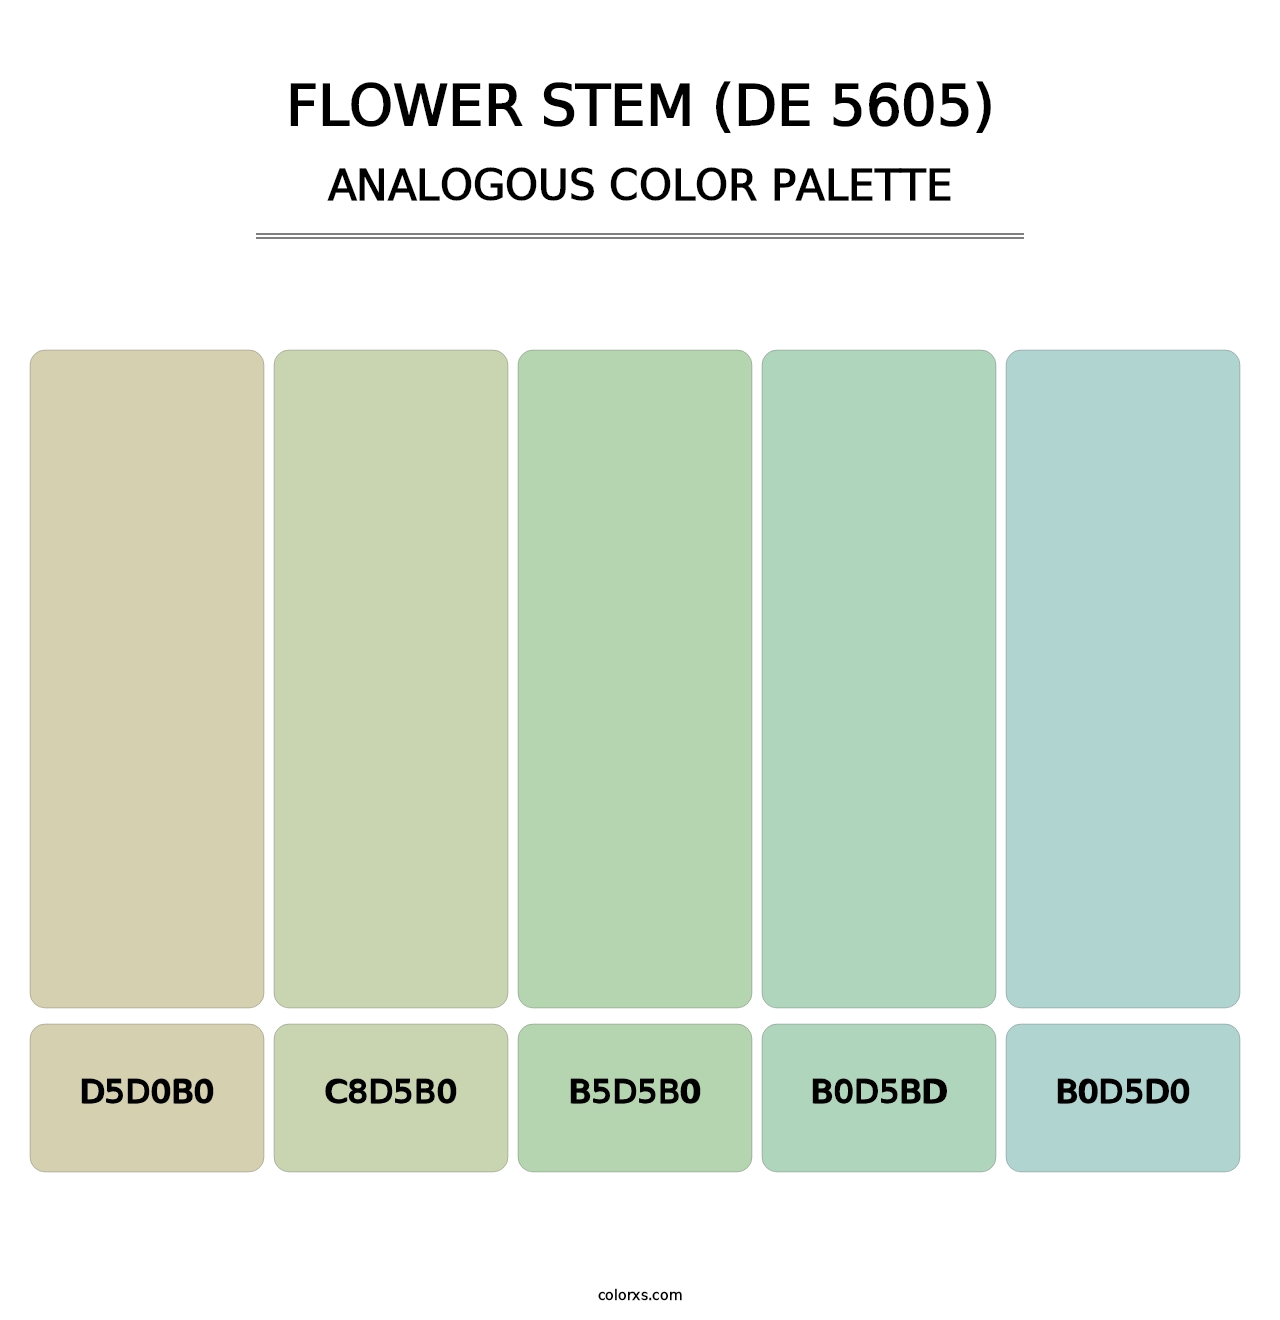 Flower Stem (DE 5605) - Analogous Color Palette